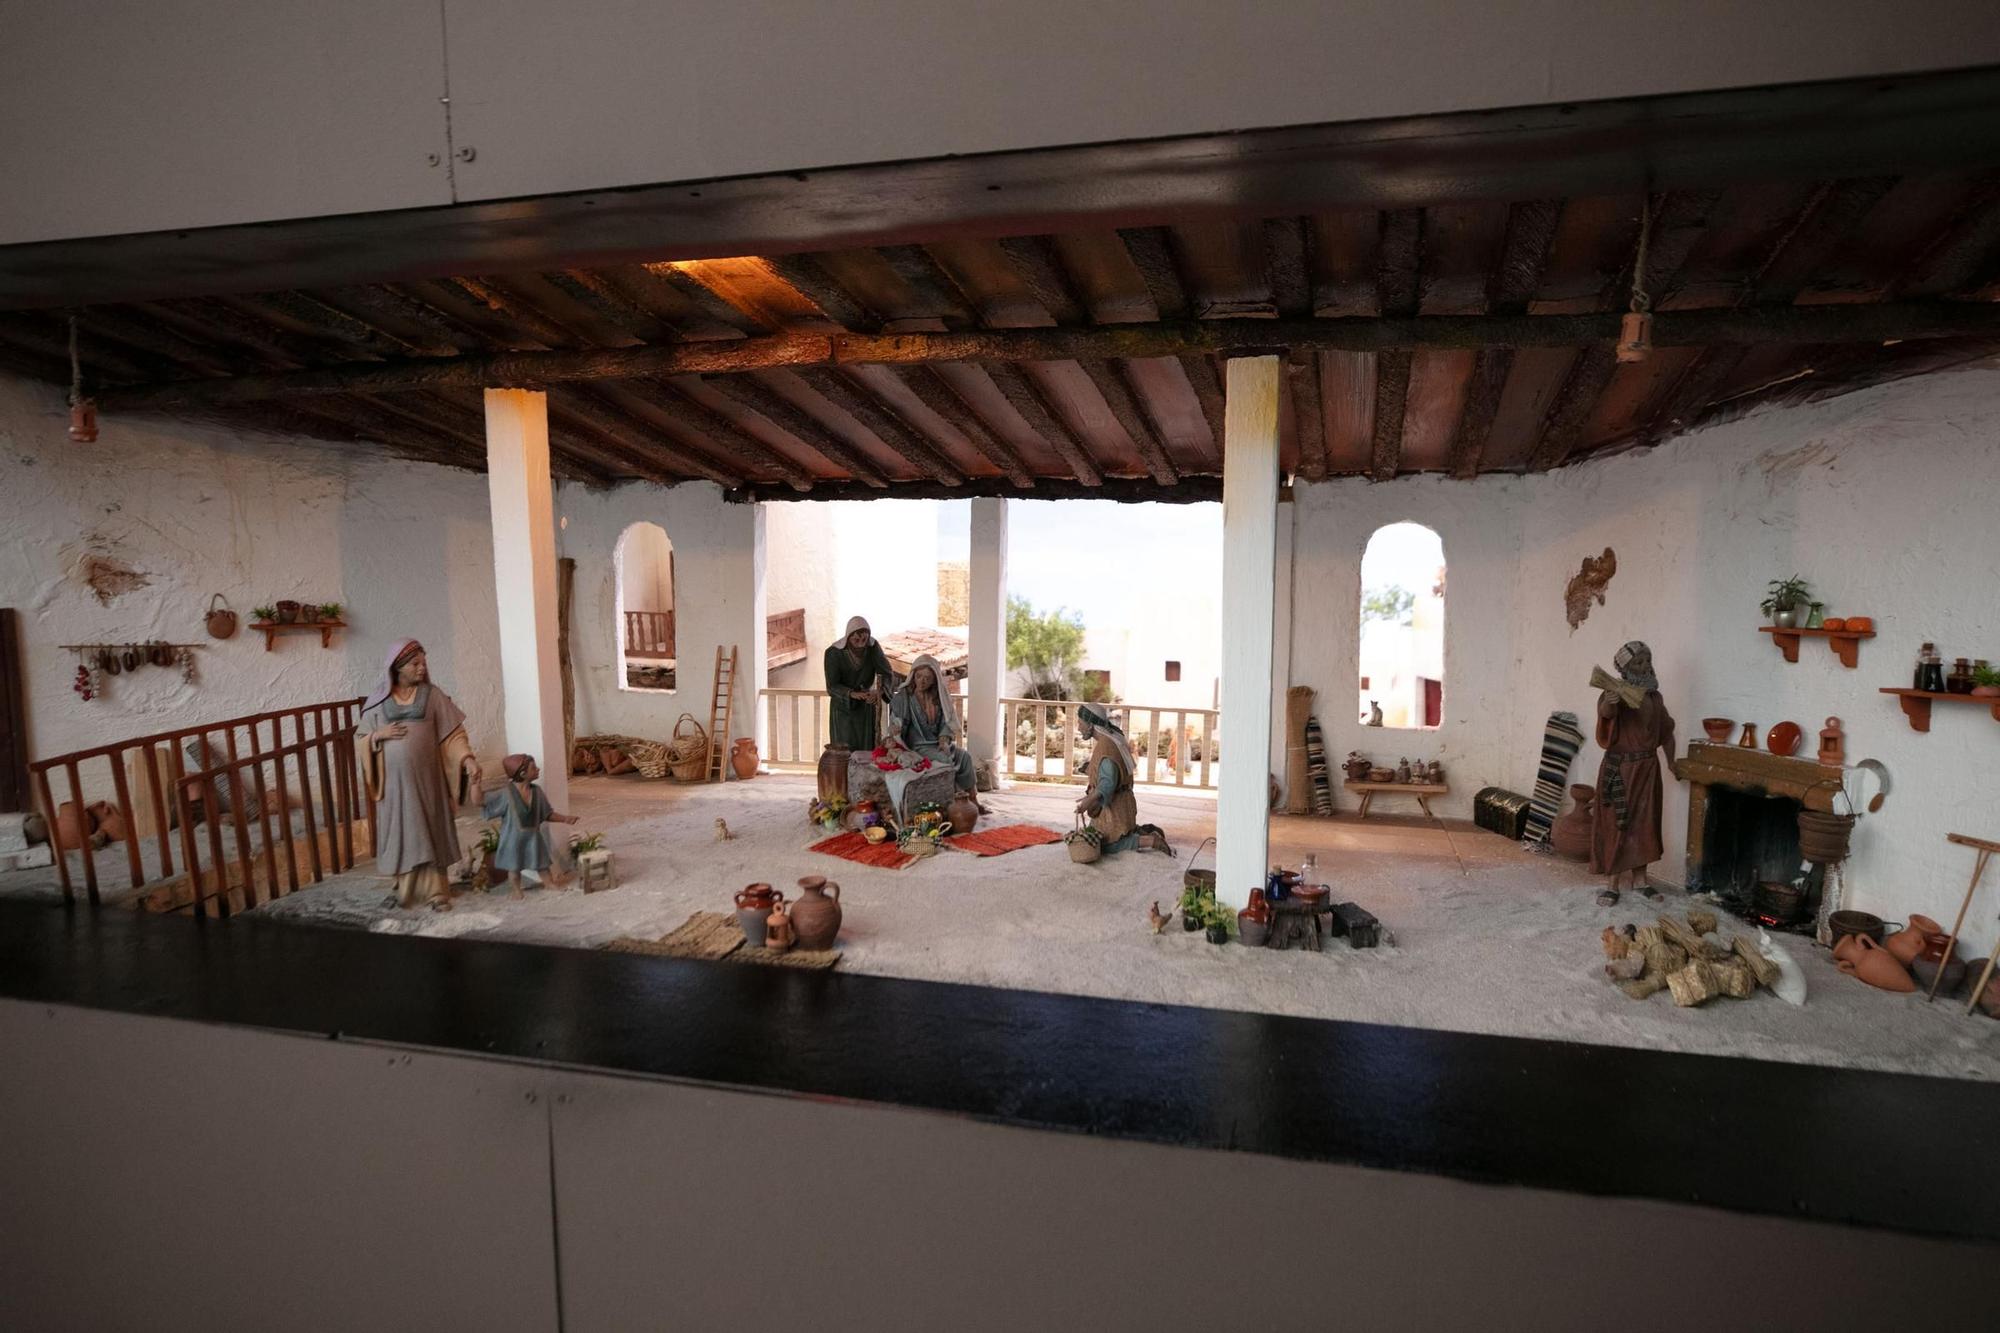 La inauguración del belén de Sant Antoni, en imágenes